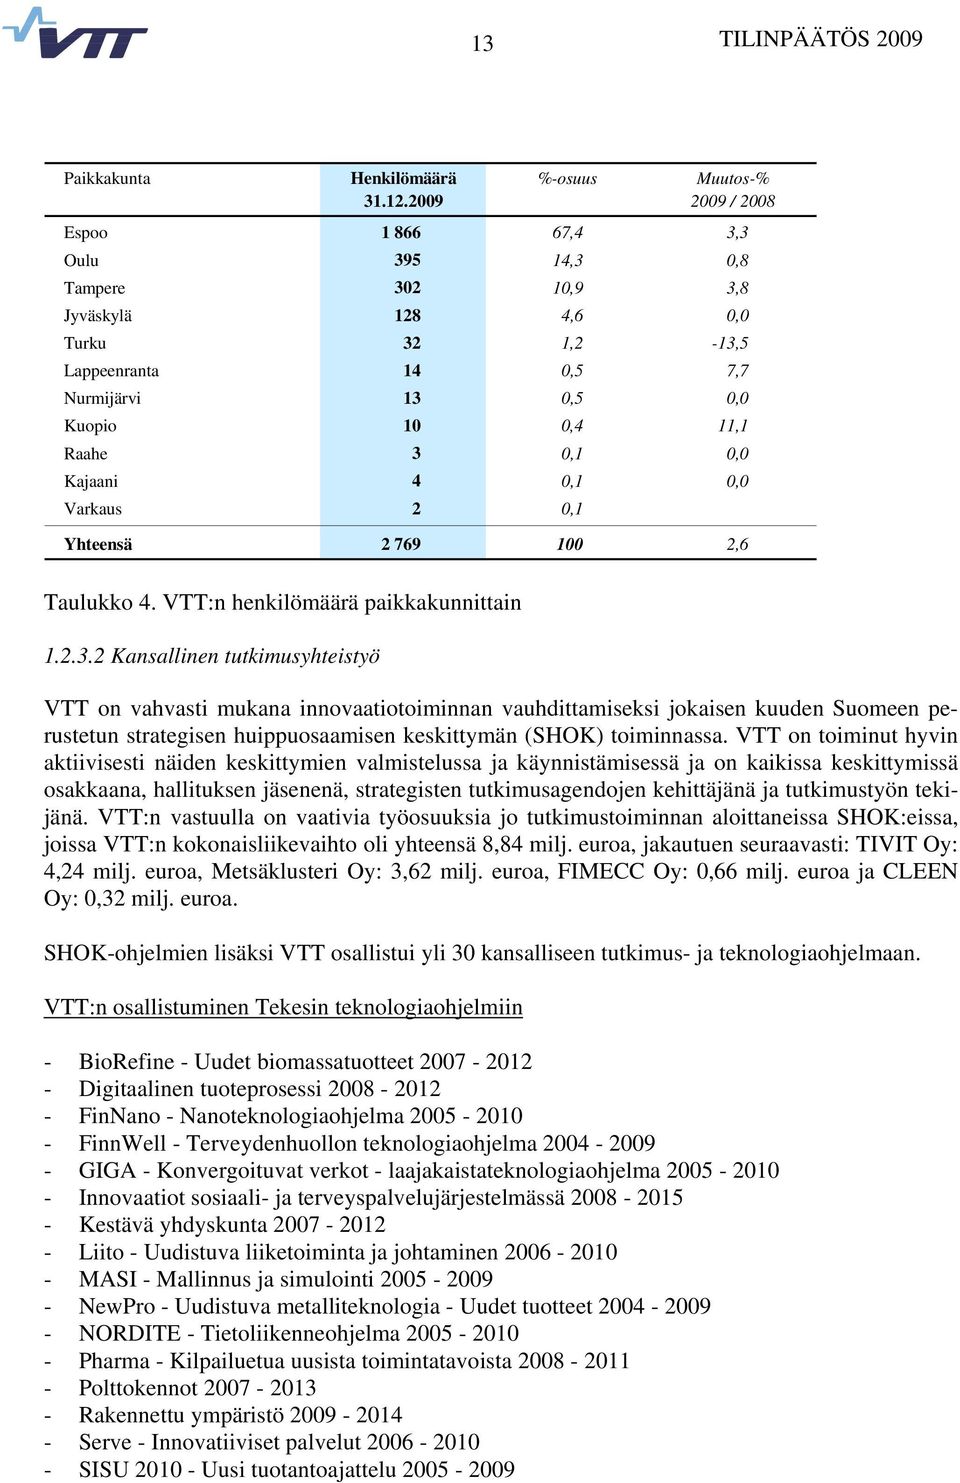 Raahe 3 0,1 0,0 Kajaani 4 0,1 0,0 Varkaus 2 0,1 Yhteensä 2 769 100 2,6 Taulukko 4. VTT:n henkilömäärä paikkakunnittain 1.2.3.2 Kansallinen tutkimusyhteistyö VTT on vahvasti mukana innovaatiotoiminnan vauhdittamiseksi jokaisen kuuden Suomeen perustetun strategisen huippuosaamisen keskittymän (SHOK) toiminnassa.